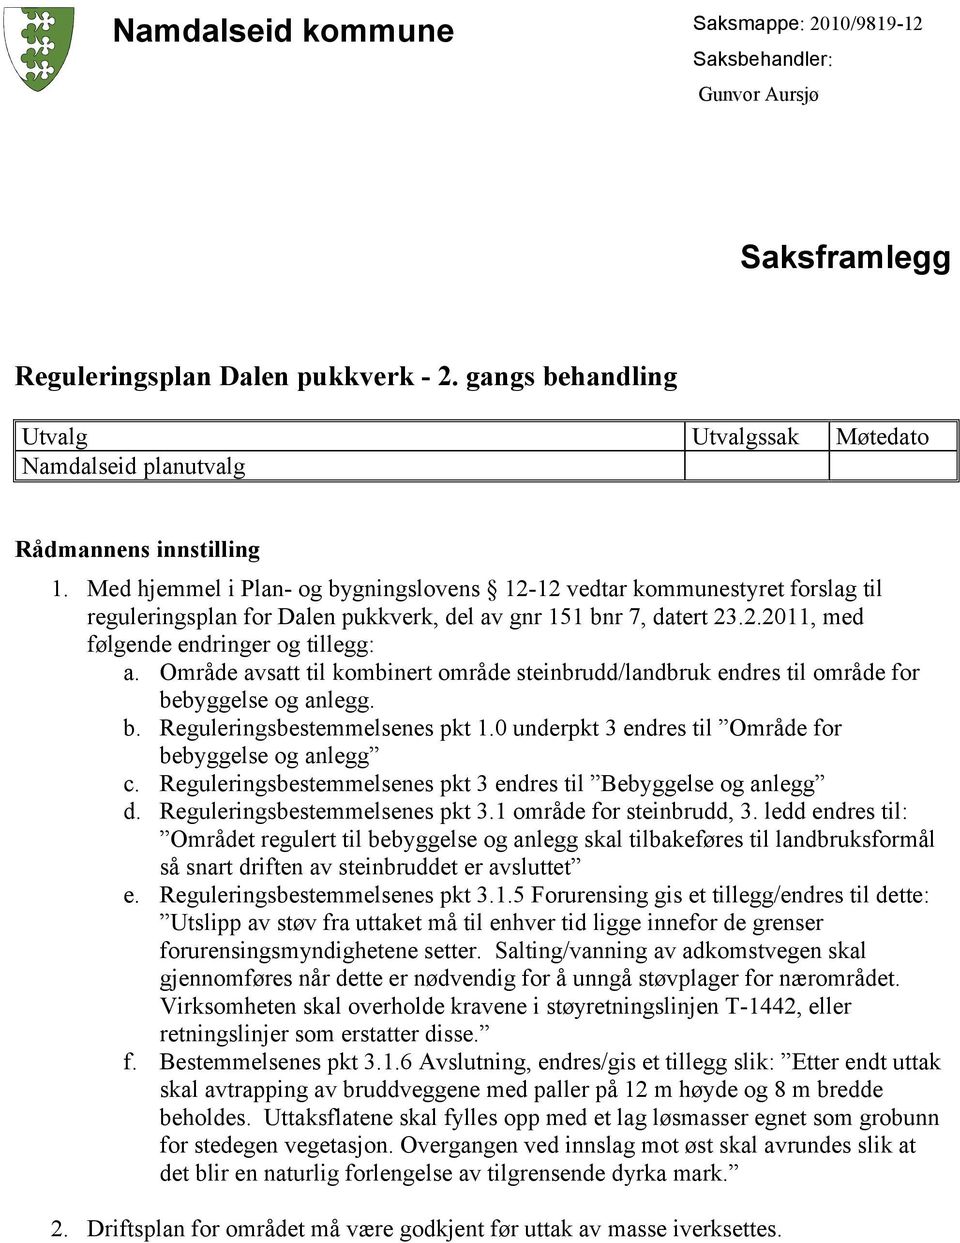 Med hjemmel i Plan- og bygningslovens 12-12 vedtar kommunestyret forslag til reguleringsplan for Dalen pukkverk, del av gnr 151 bnr 7, datert 23.2.2011, med følgende endringer og tillegg: a.